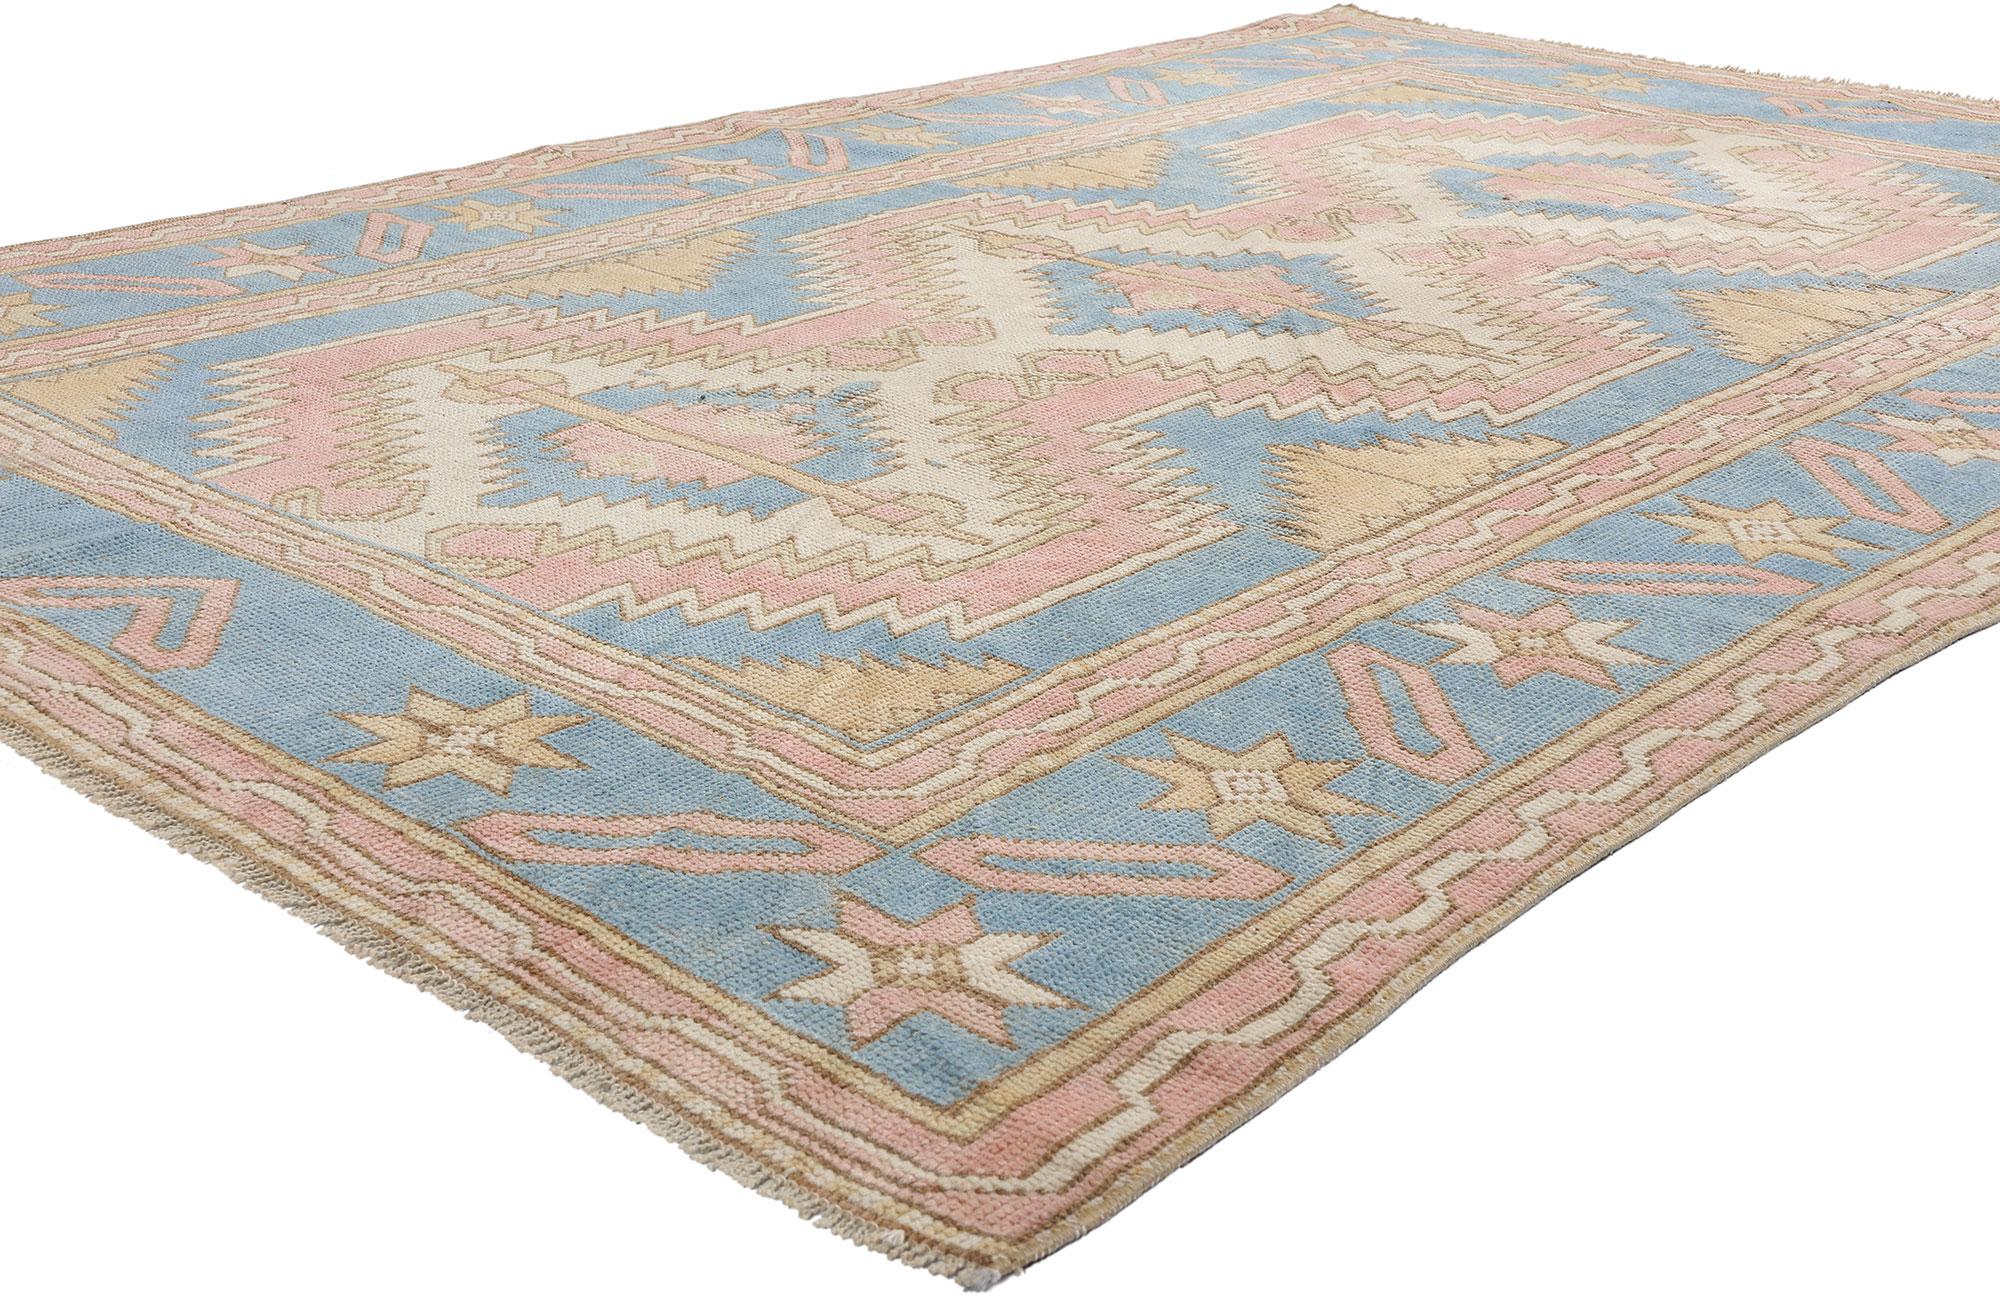 53939 Vintage Pink Türkischer Oushak-Teppich, 04'11 x 07'02. Antike gewaschene türkische Oushak-Teppiche werden einem einzigartigen Waschverfahren unterzogen, das sie durch weiche, gedämpfte Farbtöne auszeichnet. Das Ziel ist es, die natürliche